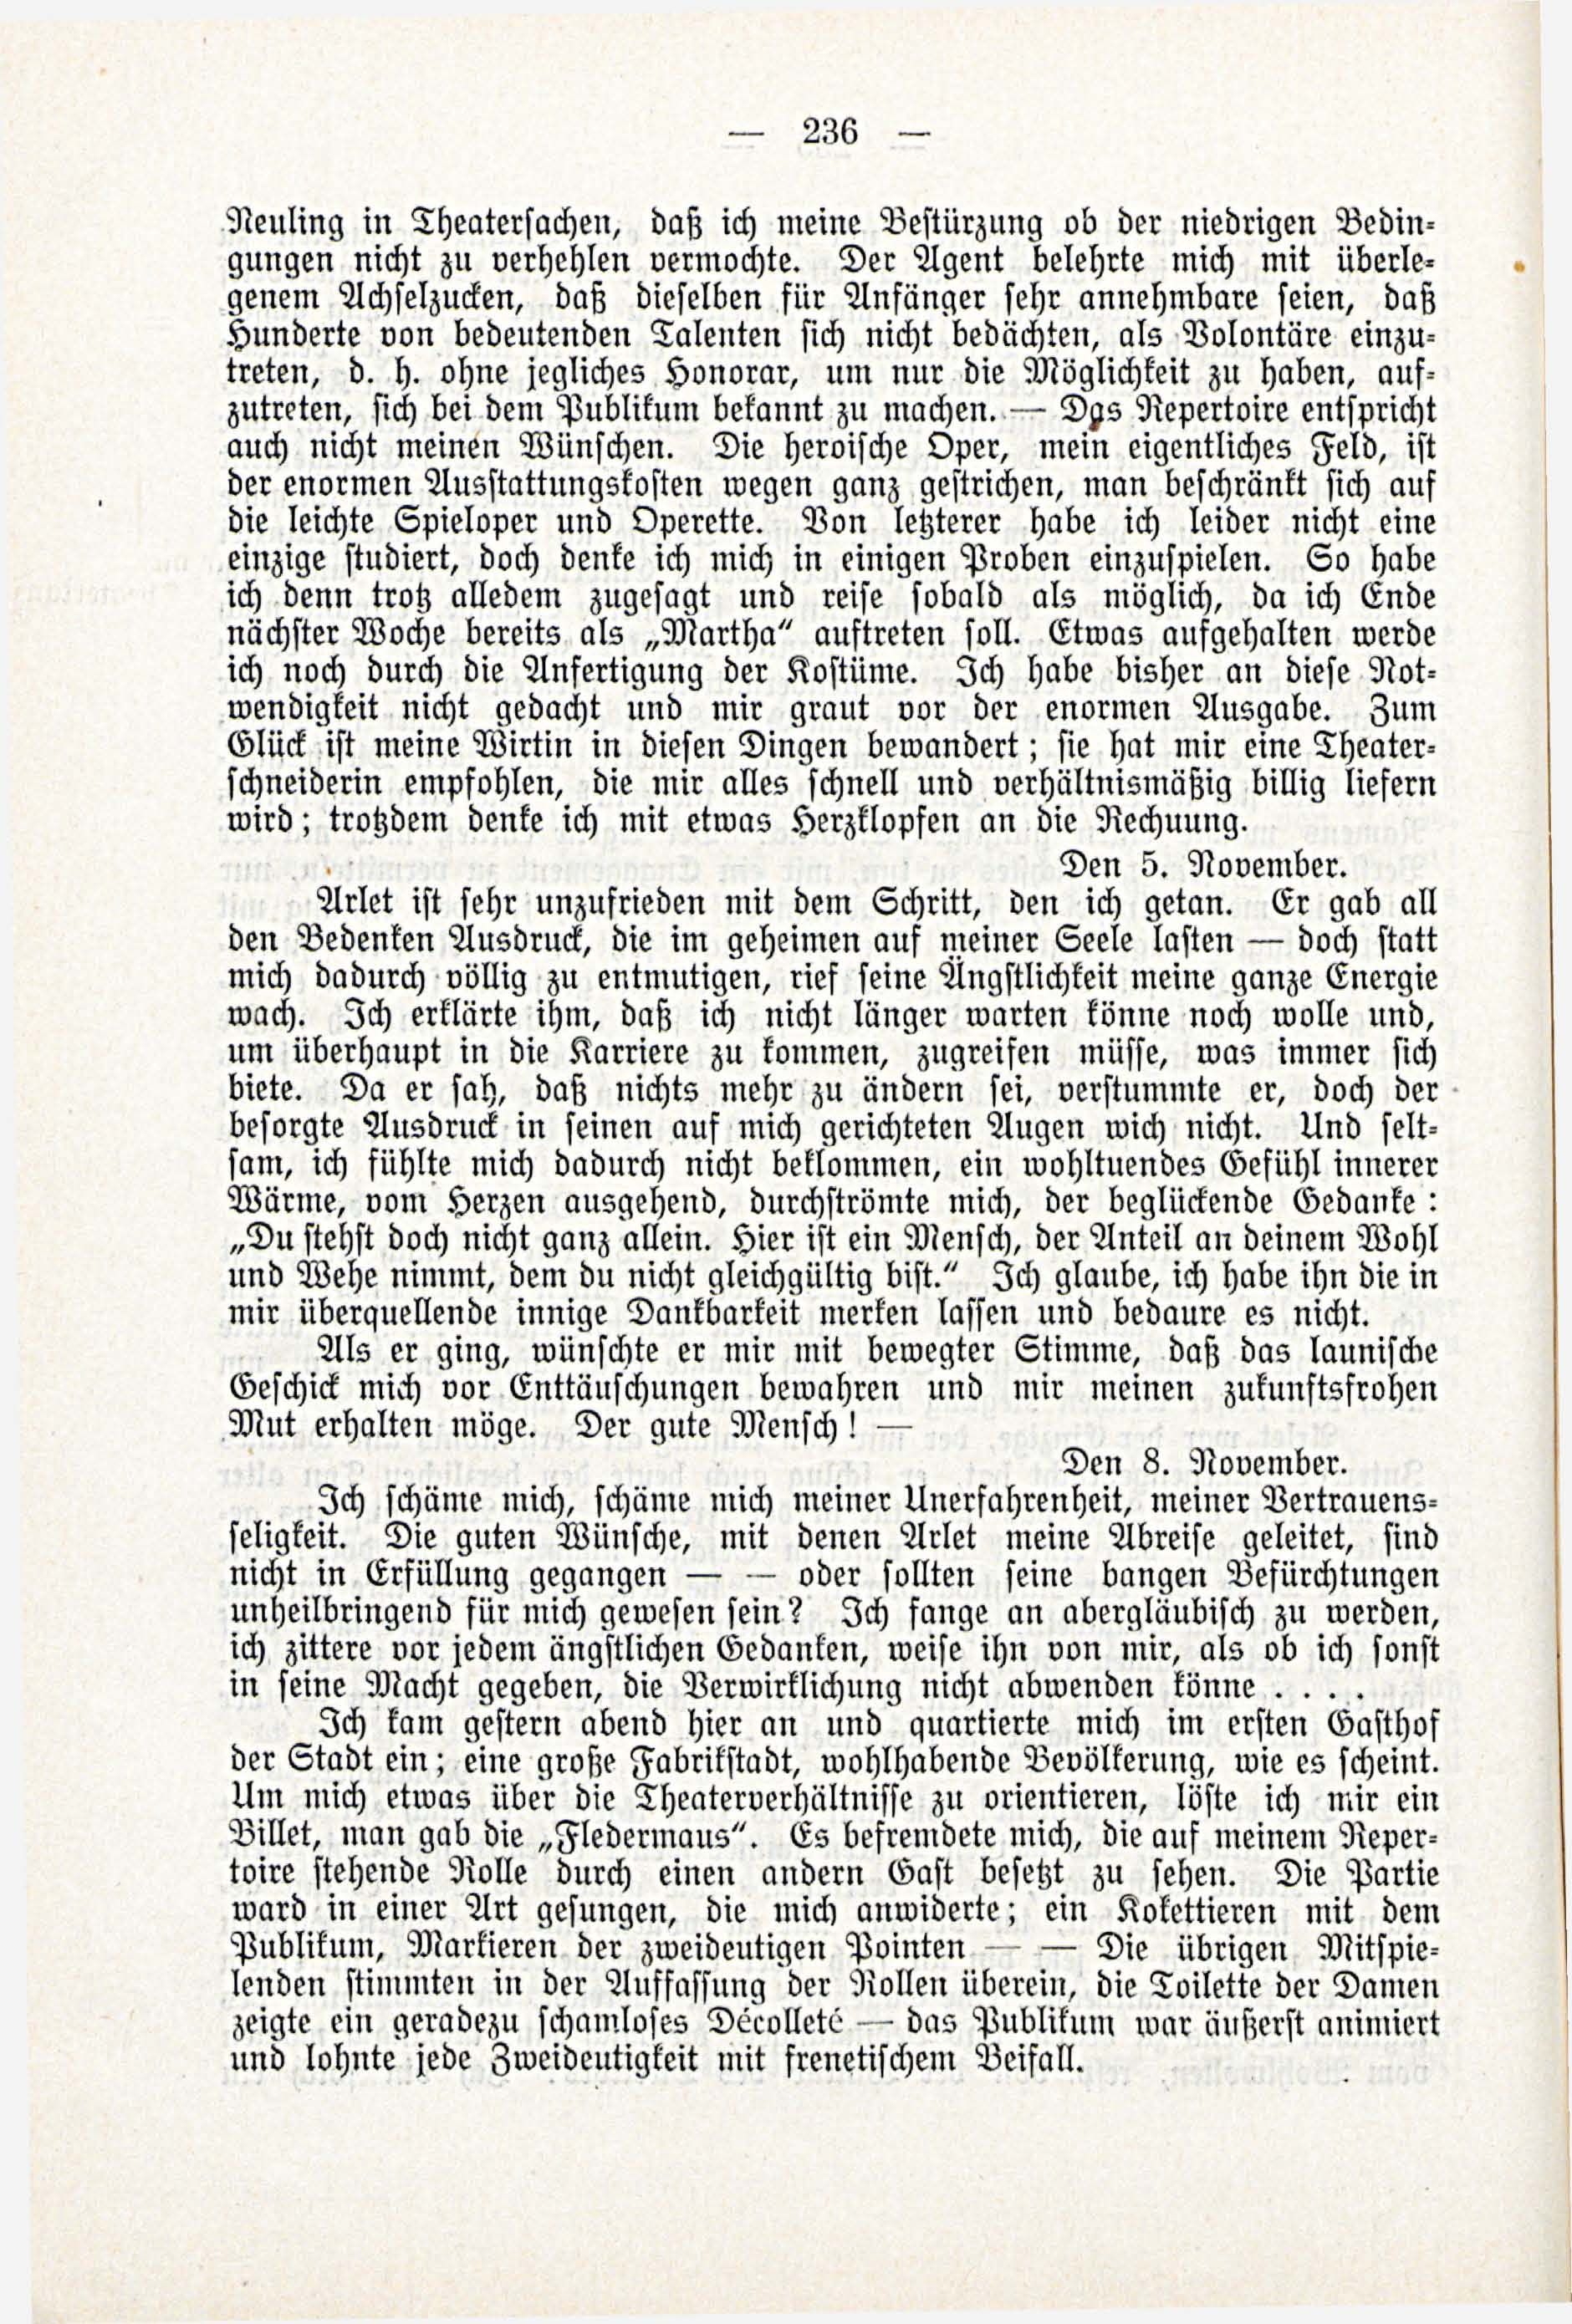 Deutsche Monatsschrift für Russland [3/03] (1914) | 82. (236) Main body of text